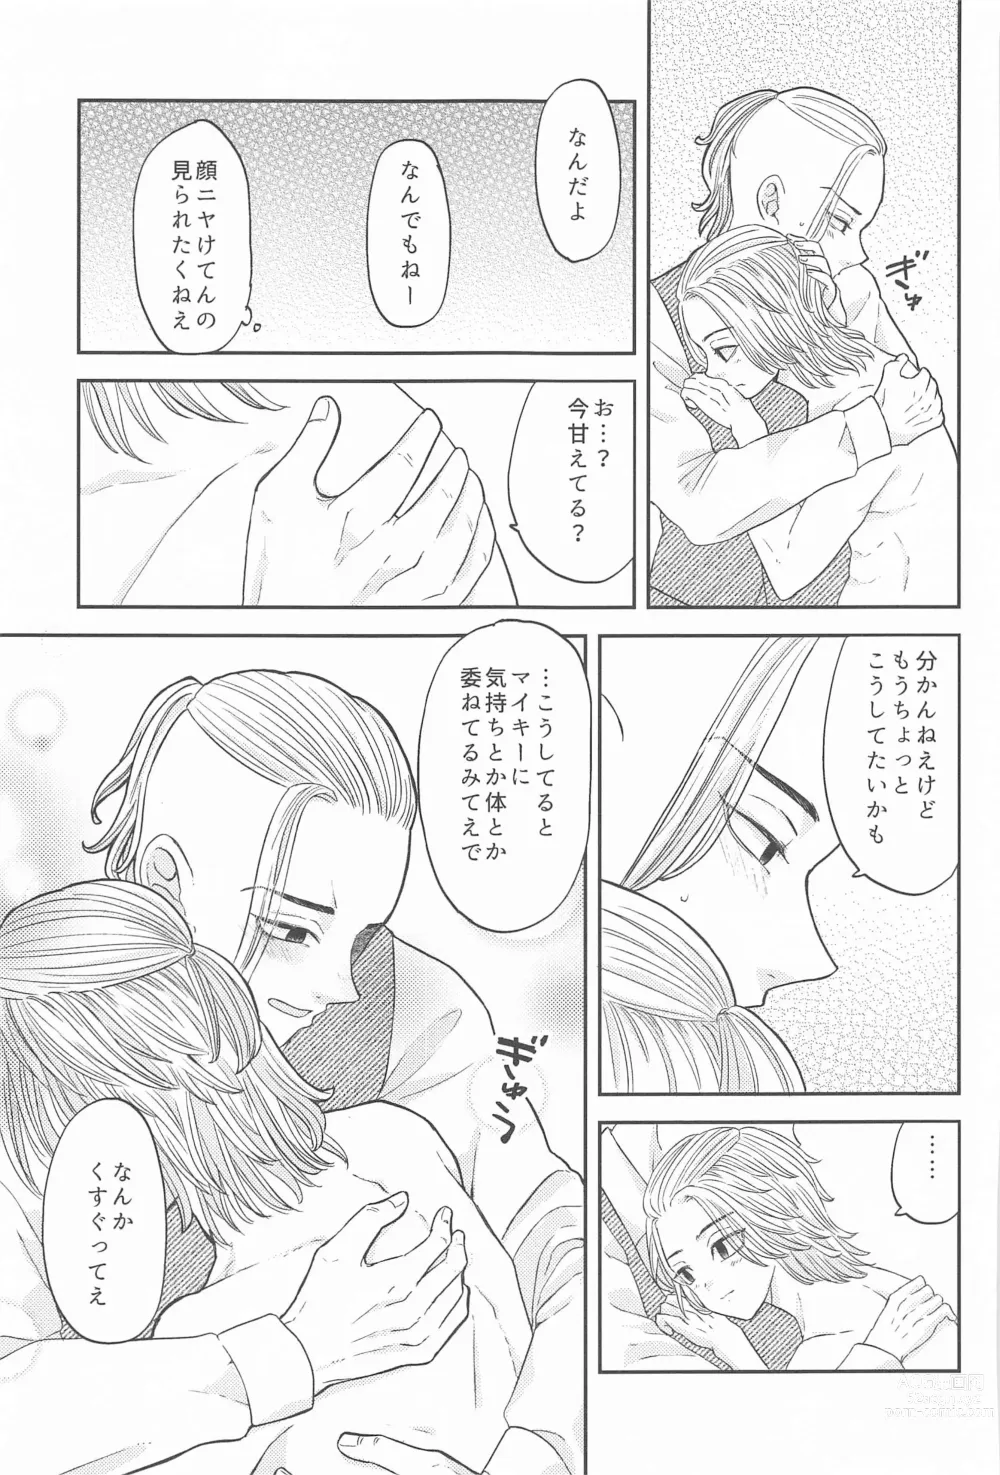 Page 24 of doujinshi Mikey-kun  wa Amayaka Shitai!